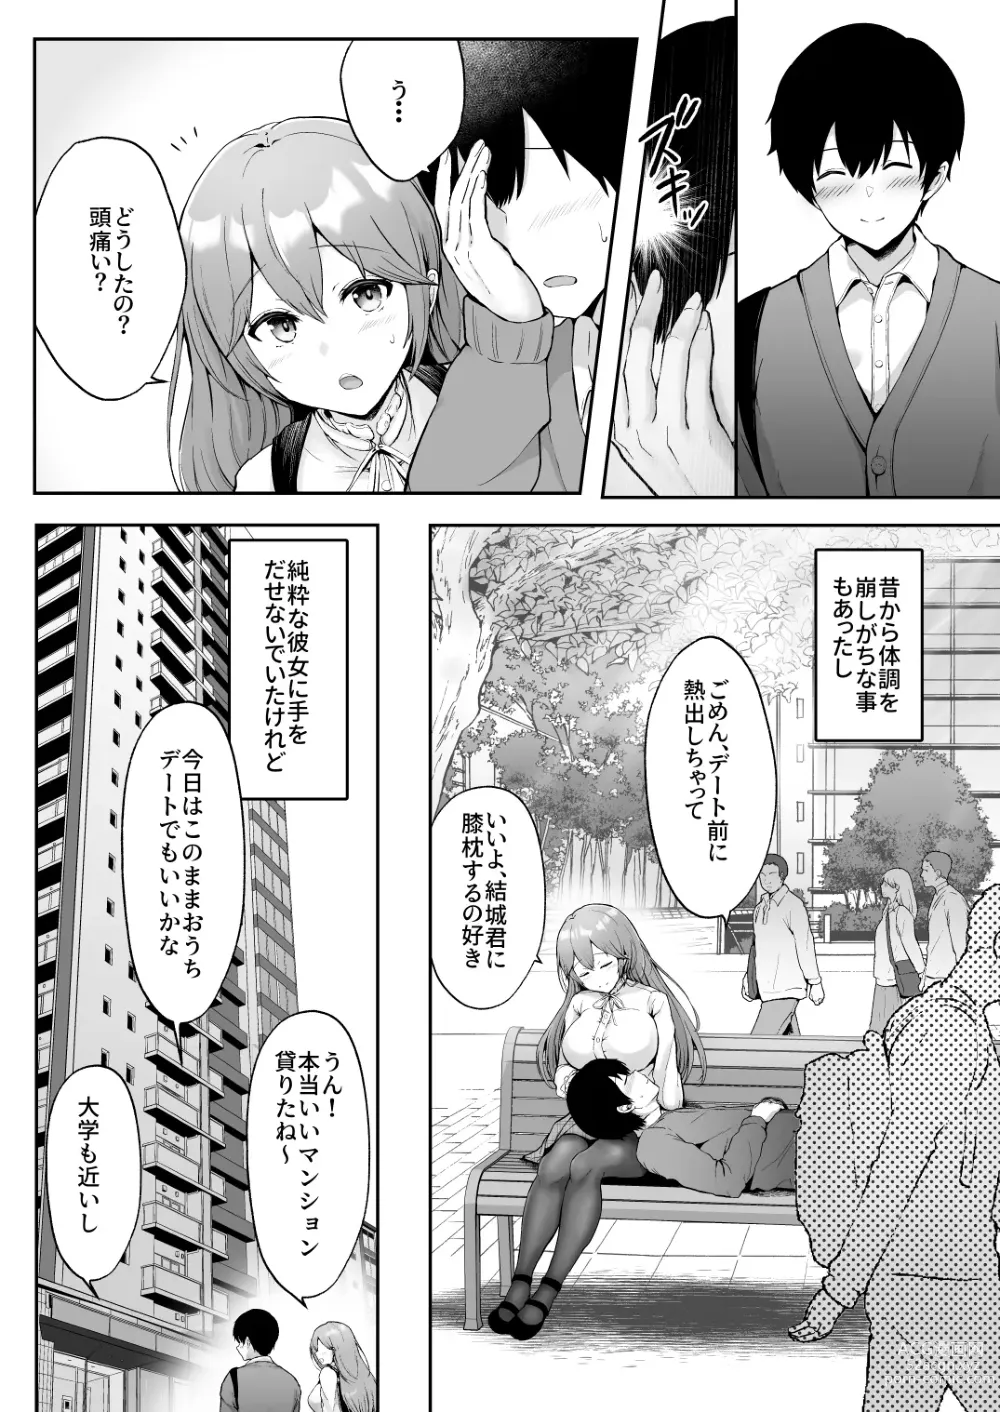 Page 5 of doujinshi Soshite Kyou mo Moteasobareru